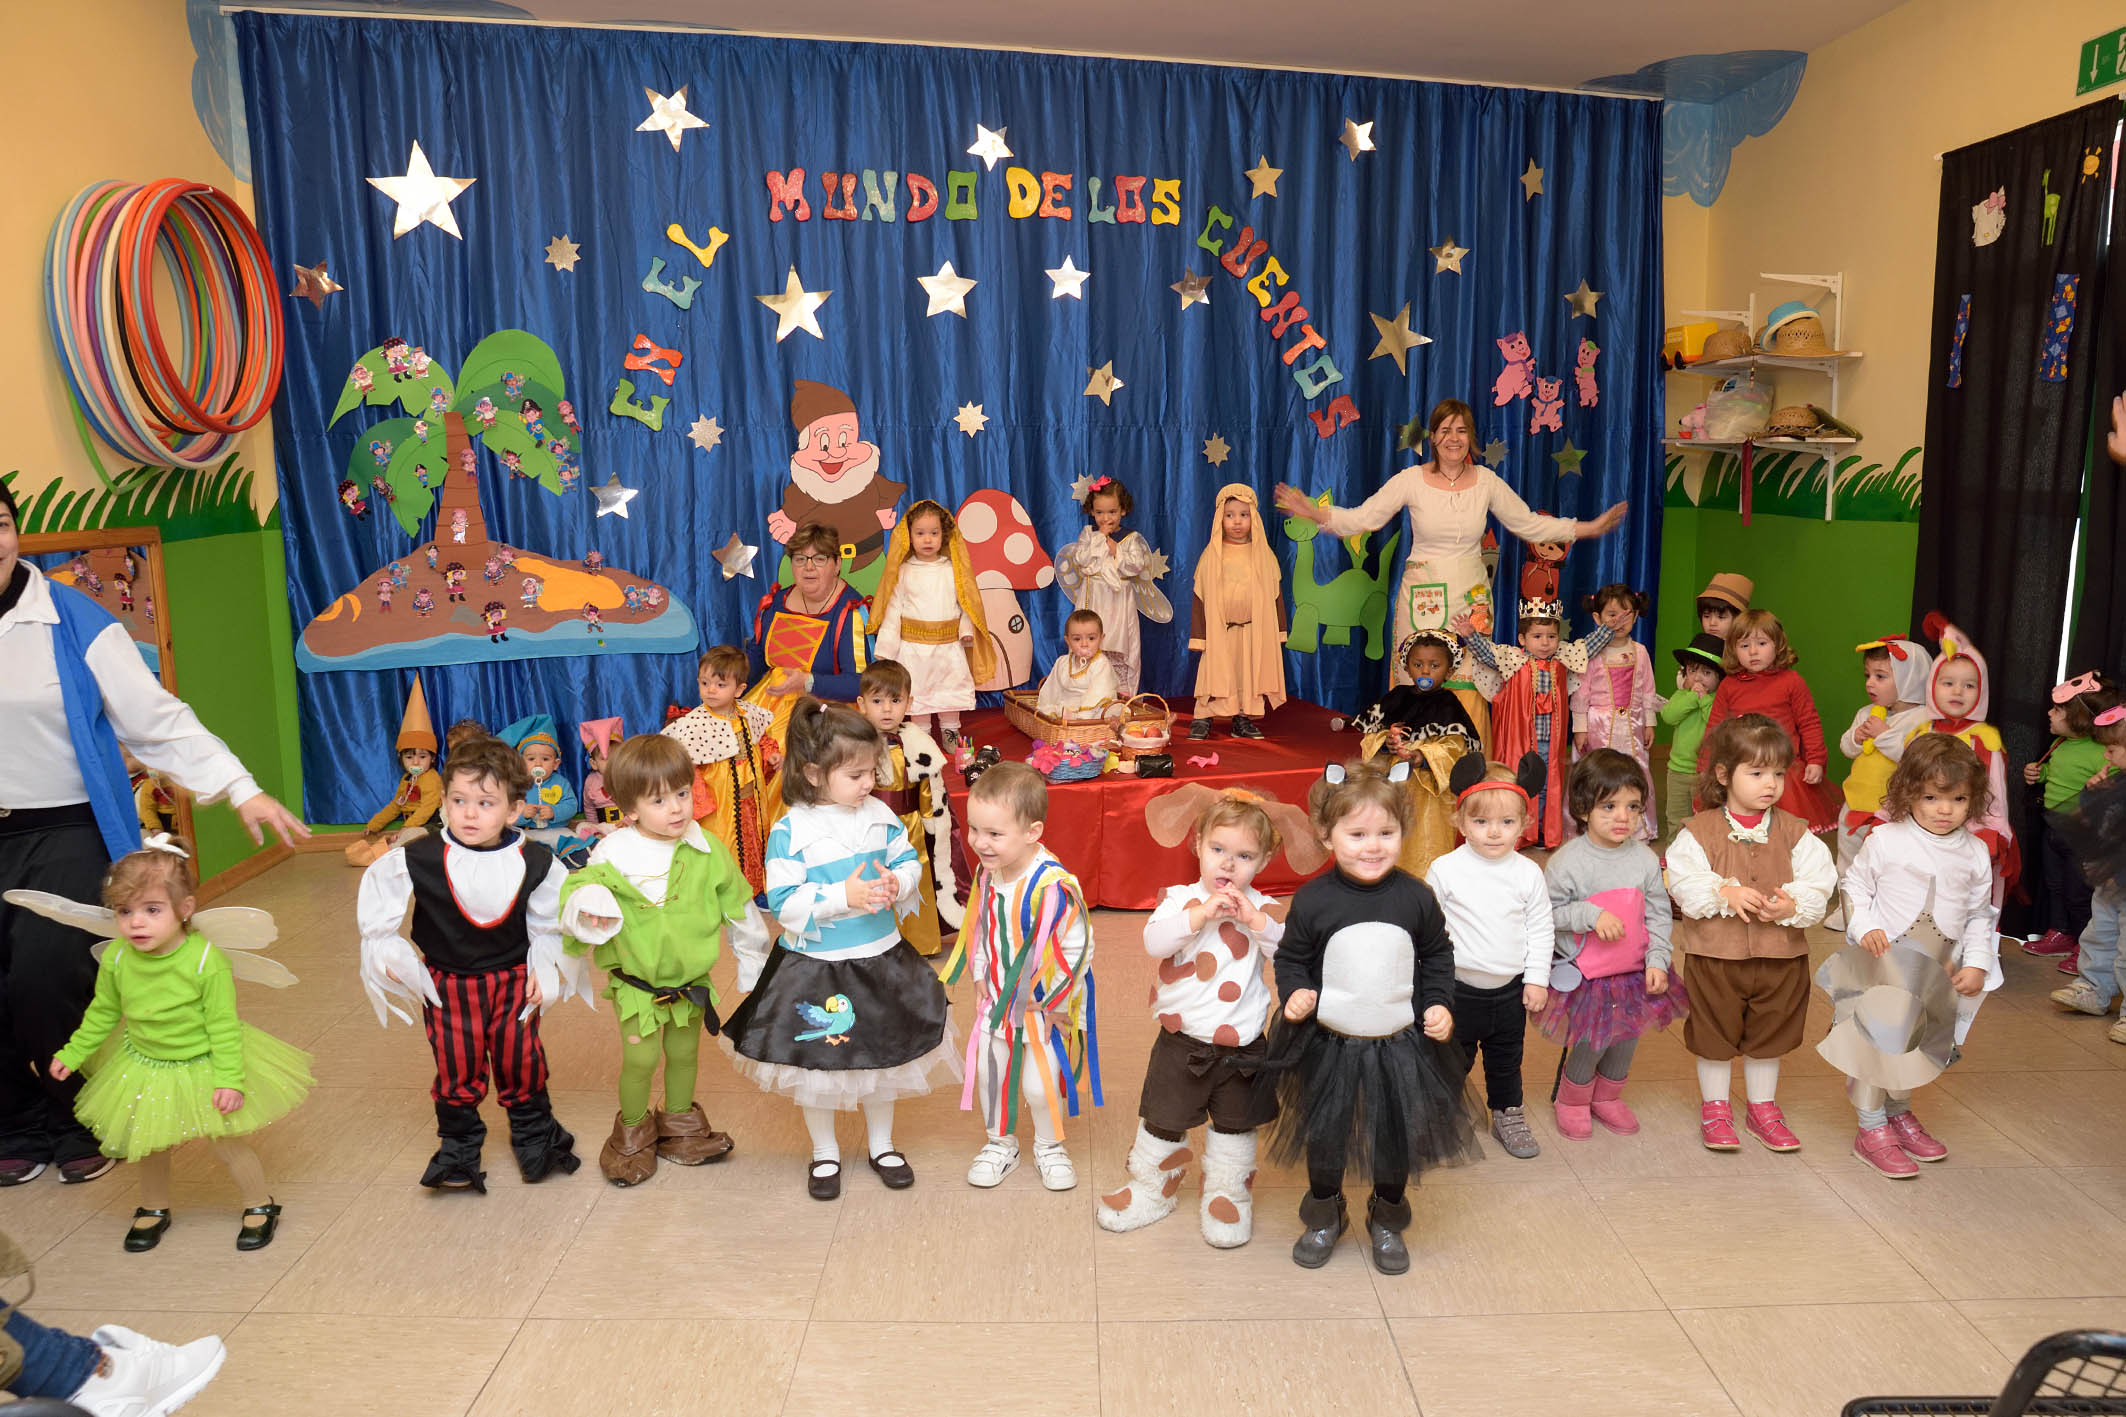 Cuentos y villancicos en la fiesta de Navidad de la Escuela Infantil “Alba”